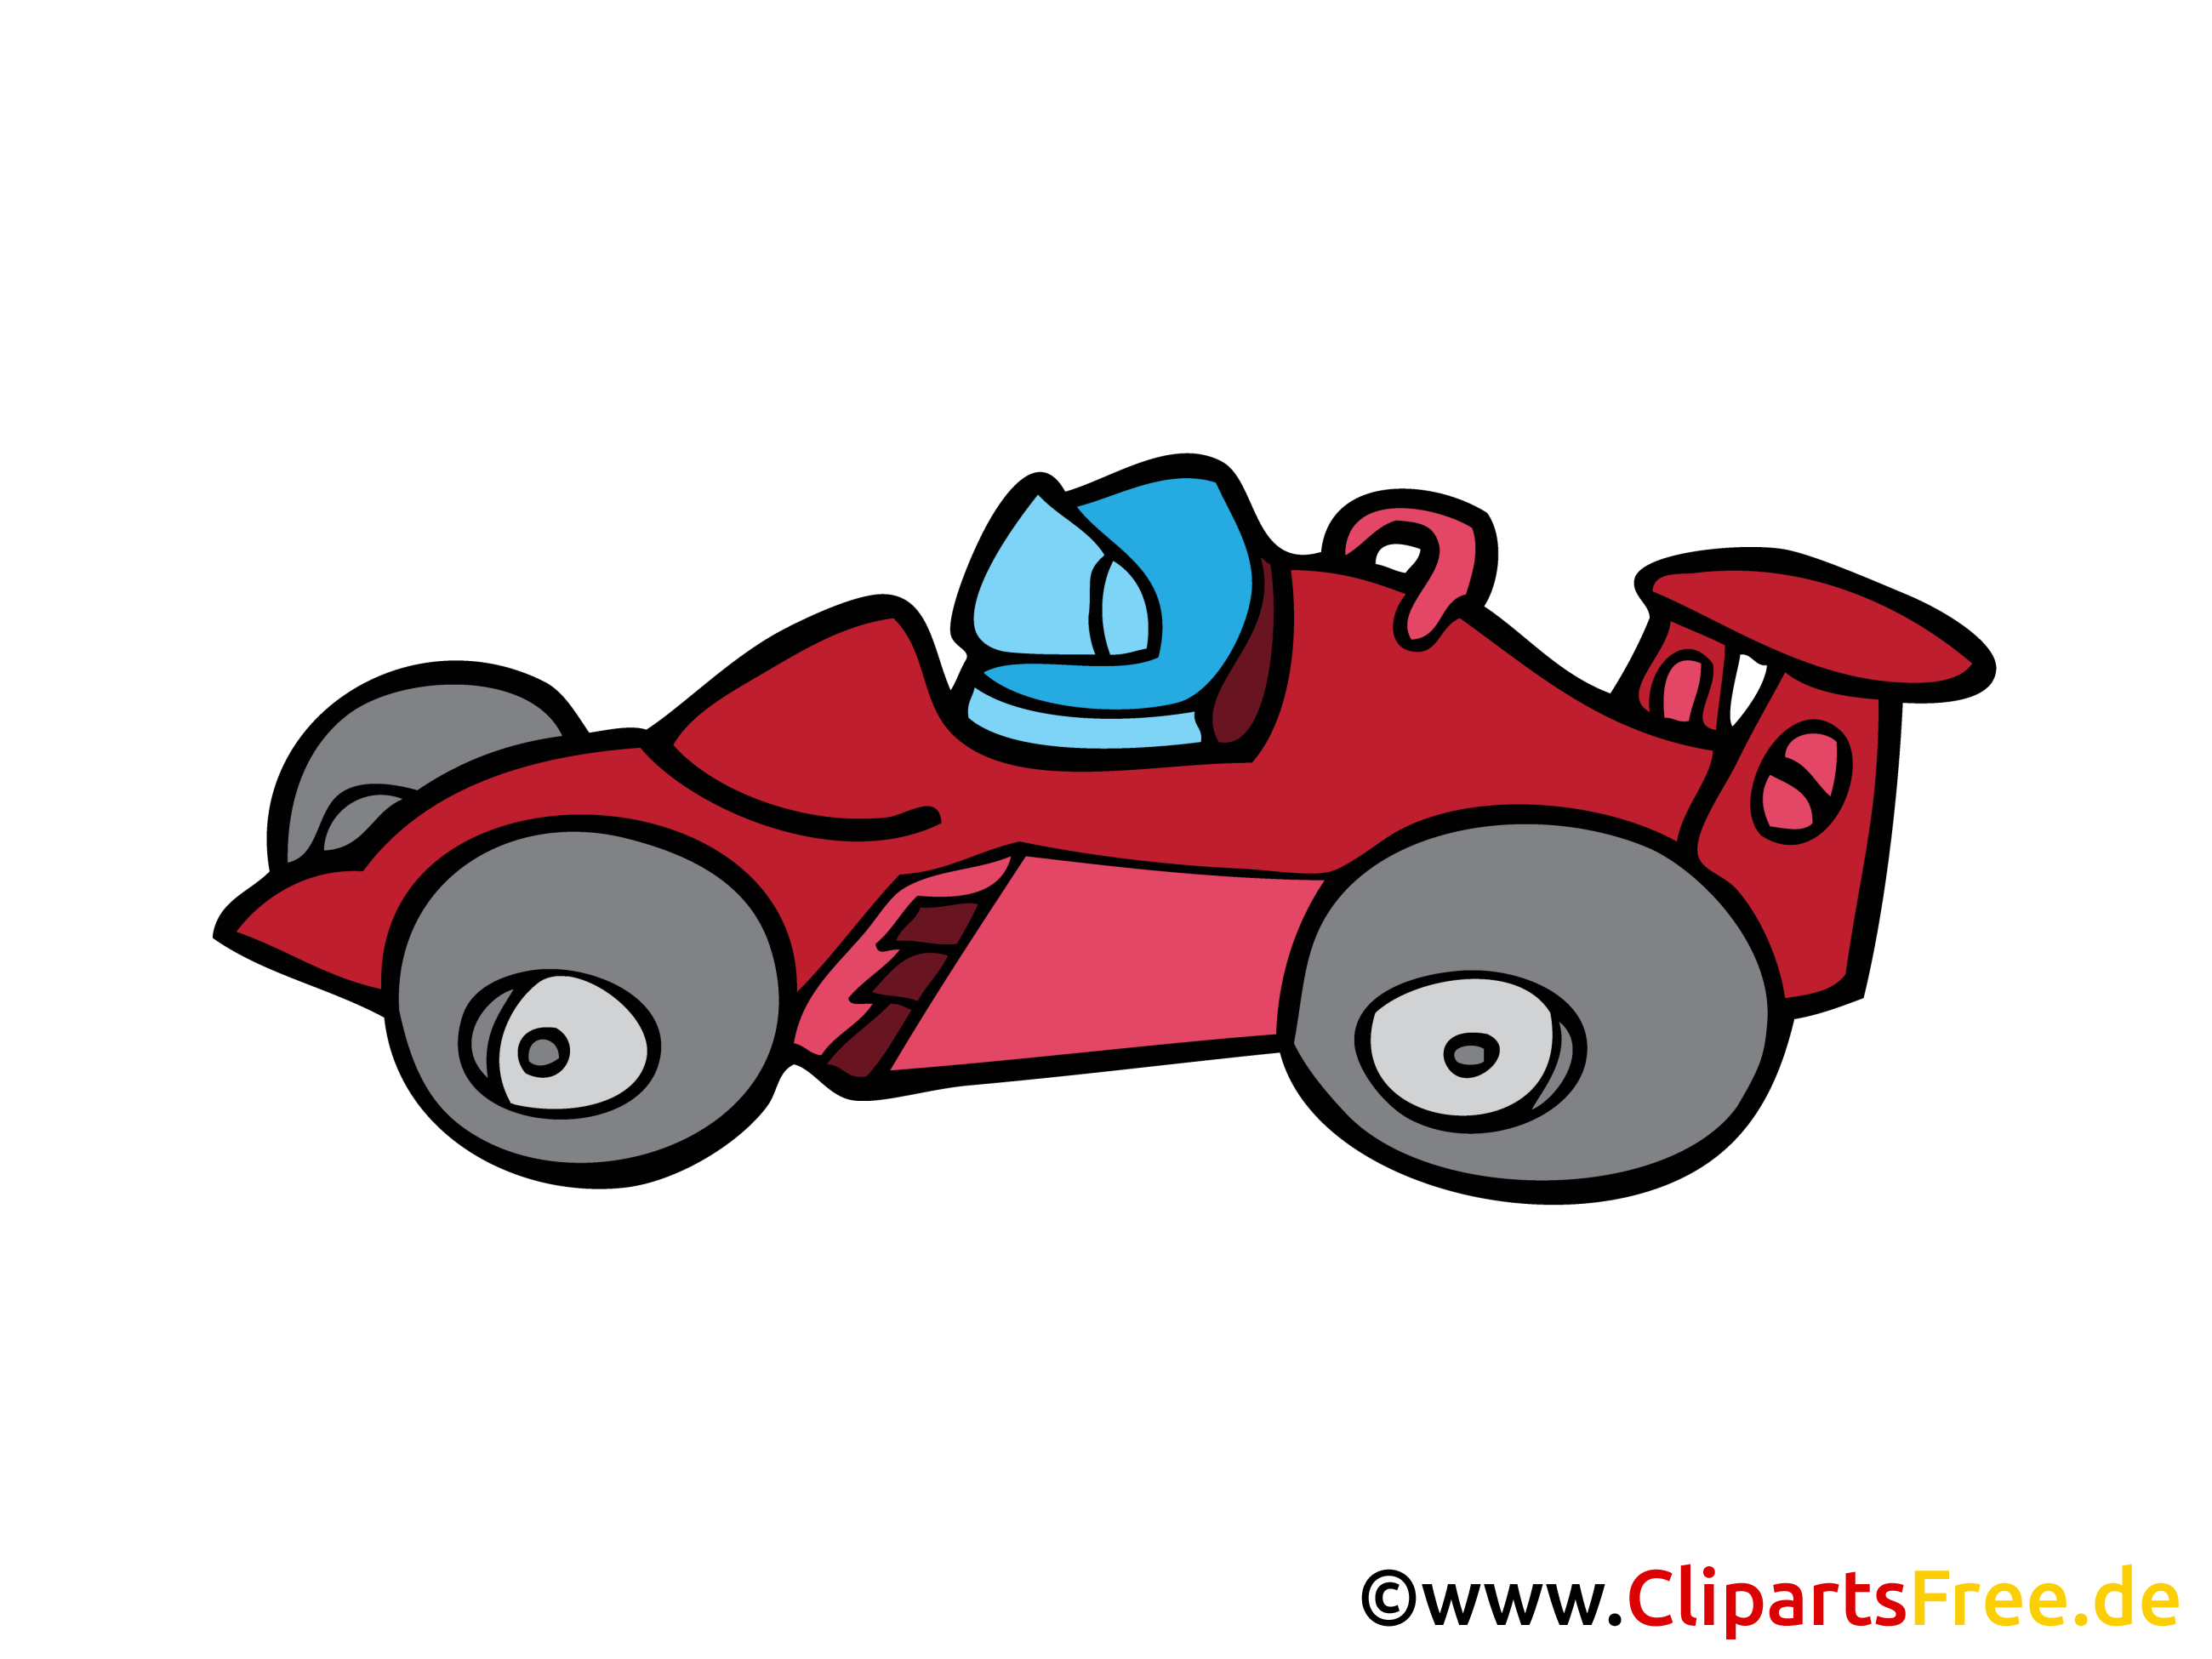 フォーミュラ1レーシングカーの漫画 画像 クリップアート デッサン